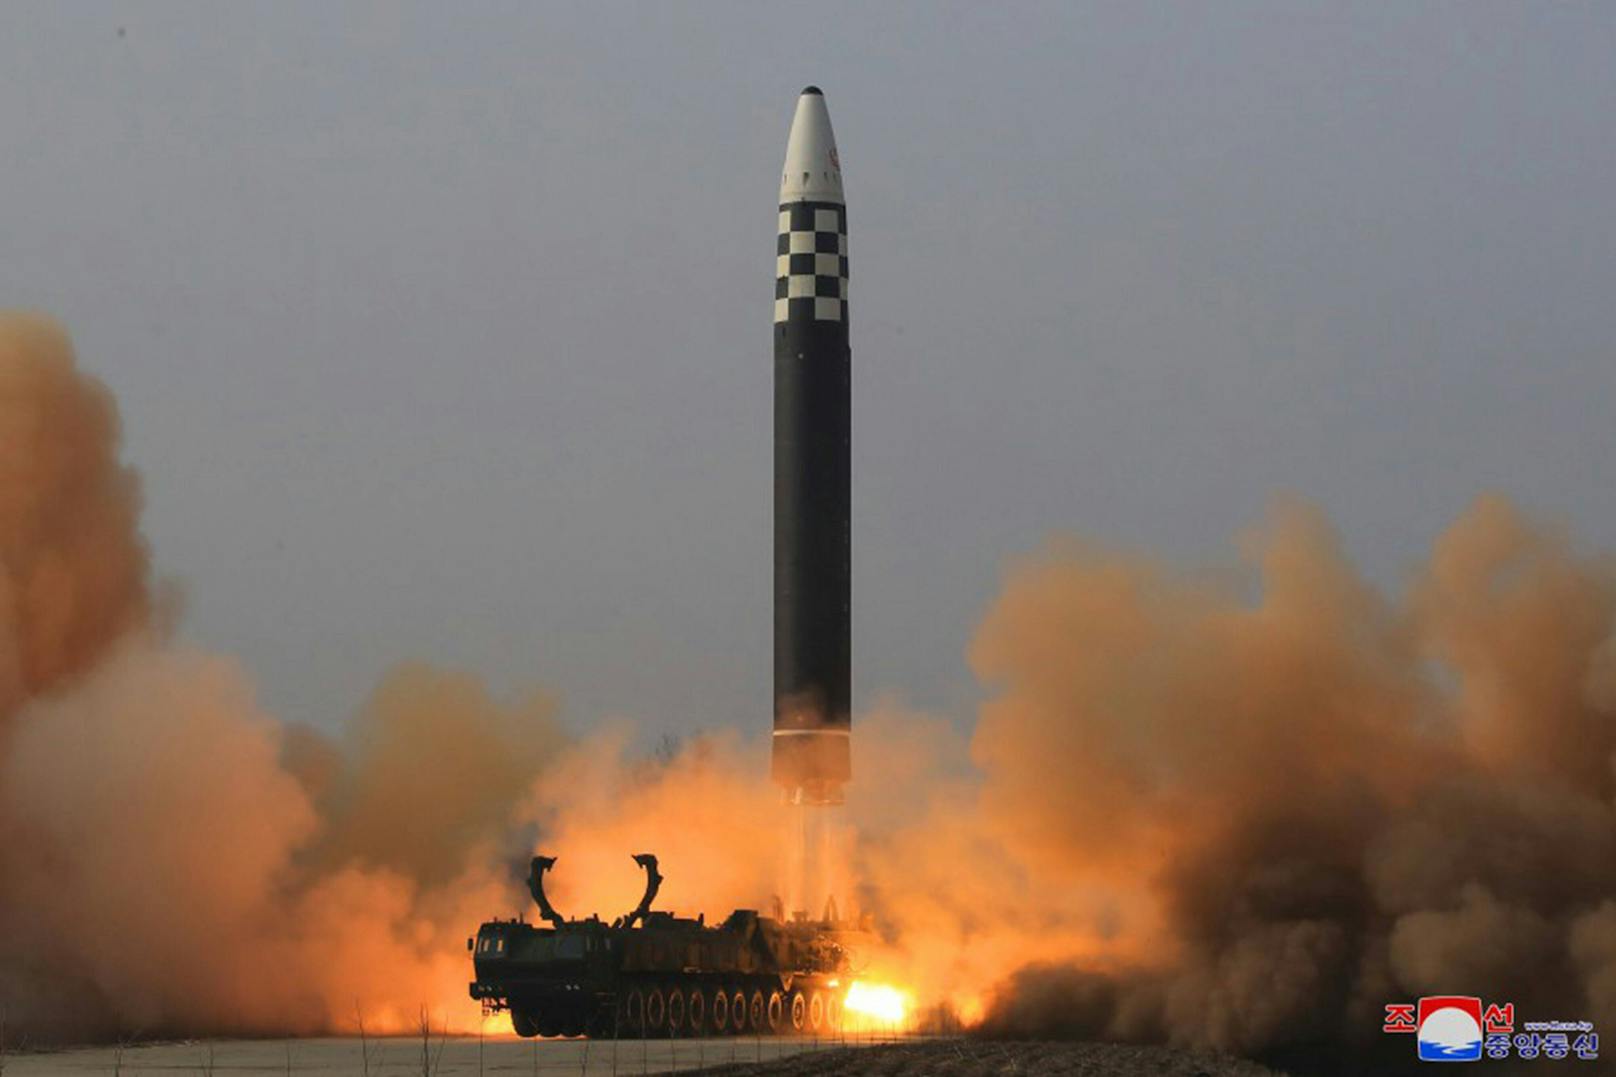 Nordkorea hatte nach einer beispiellosen Serie von Raketentests im vergangenen Jahr auch in diesem Jahr mehrfach atomwaffenfähige Raketen getestet